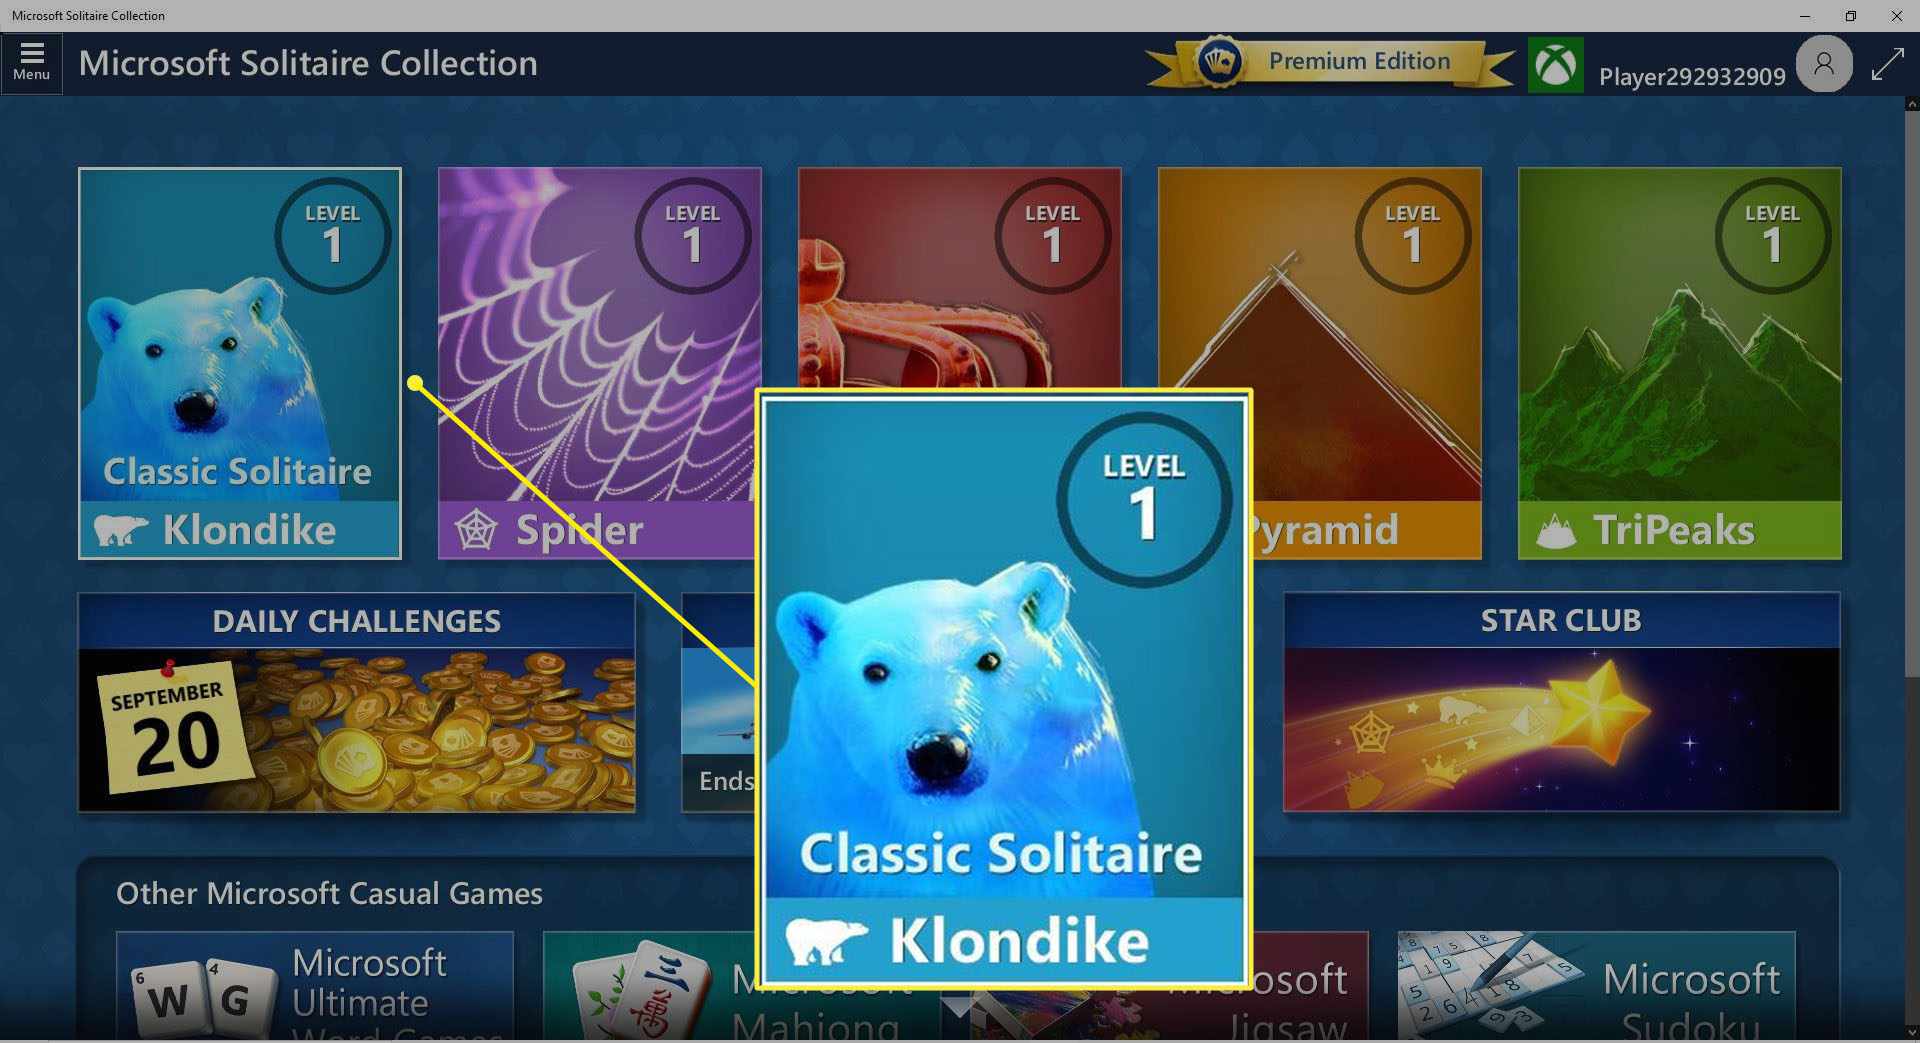 Captura de tela do Classic Solitaire (Klondike) na coleção MS Solitaire